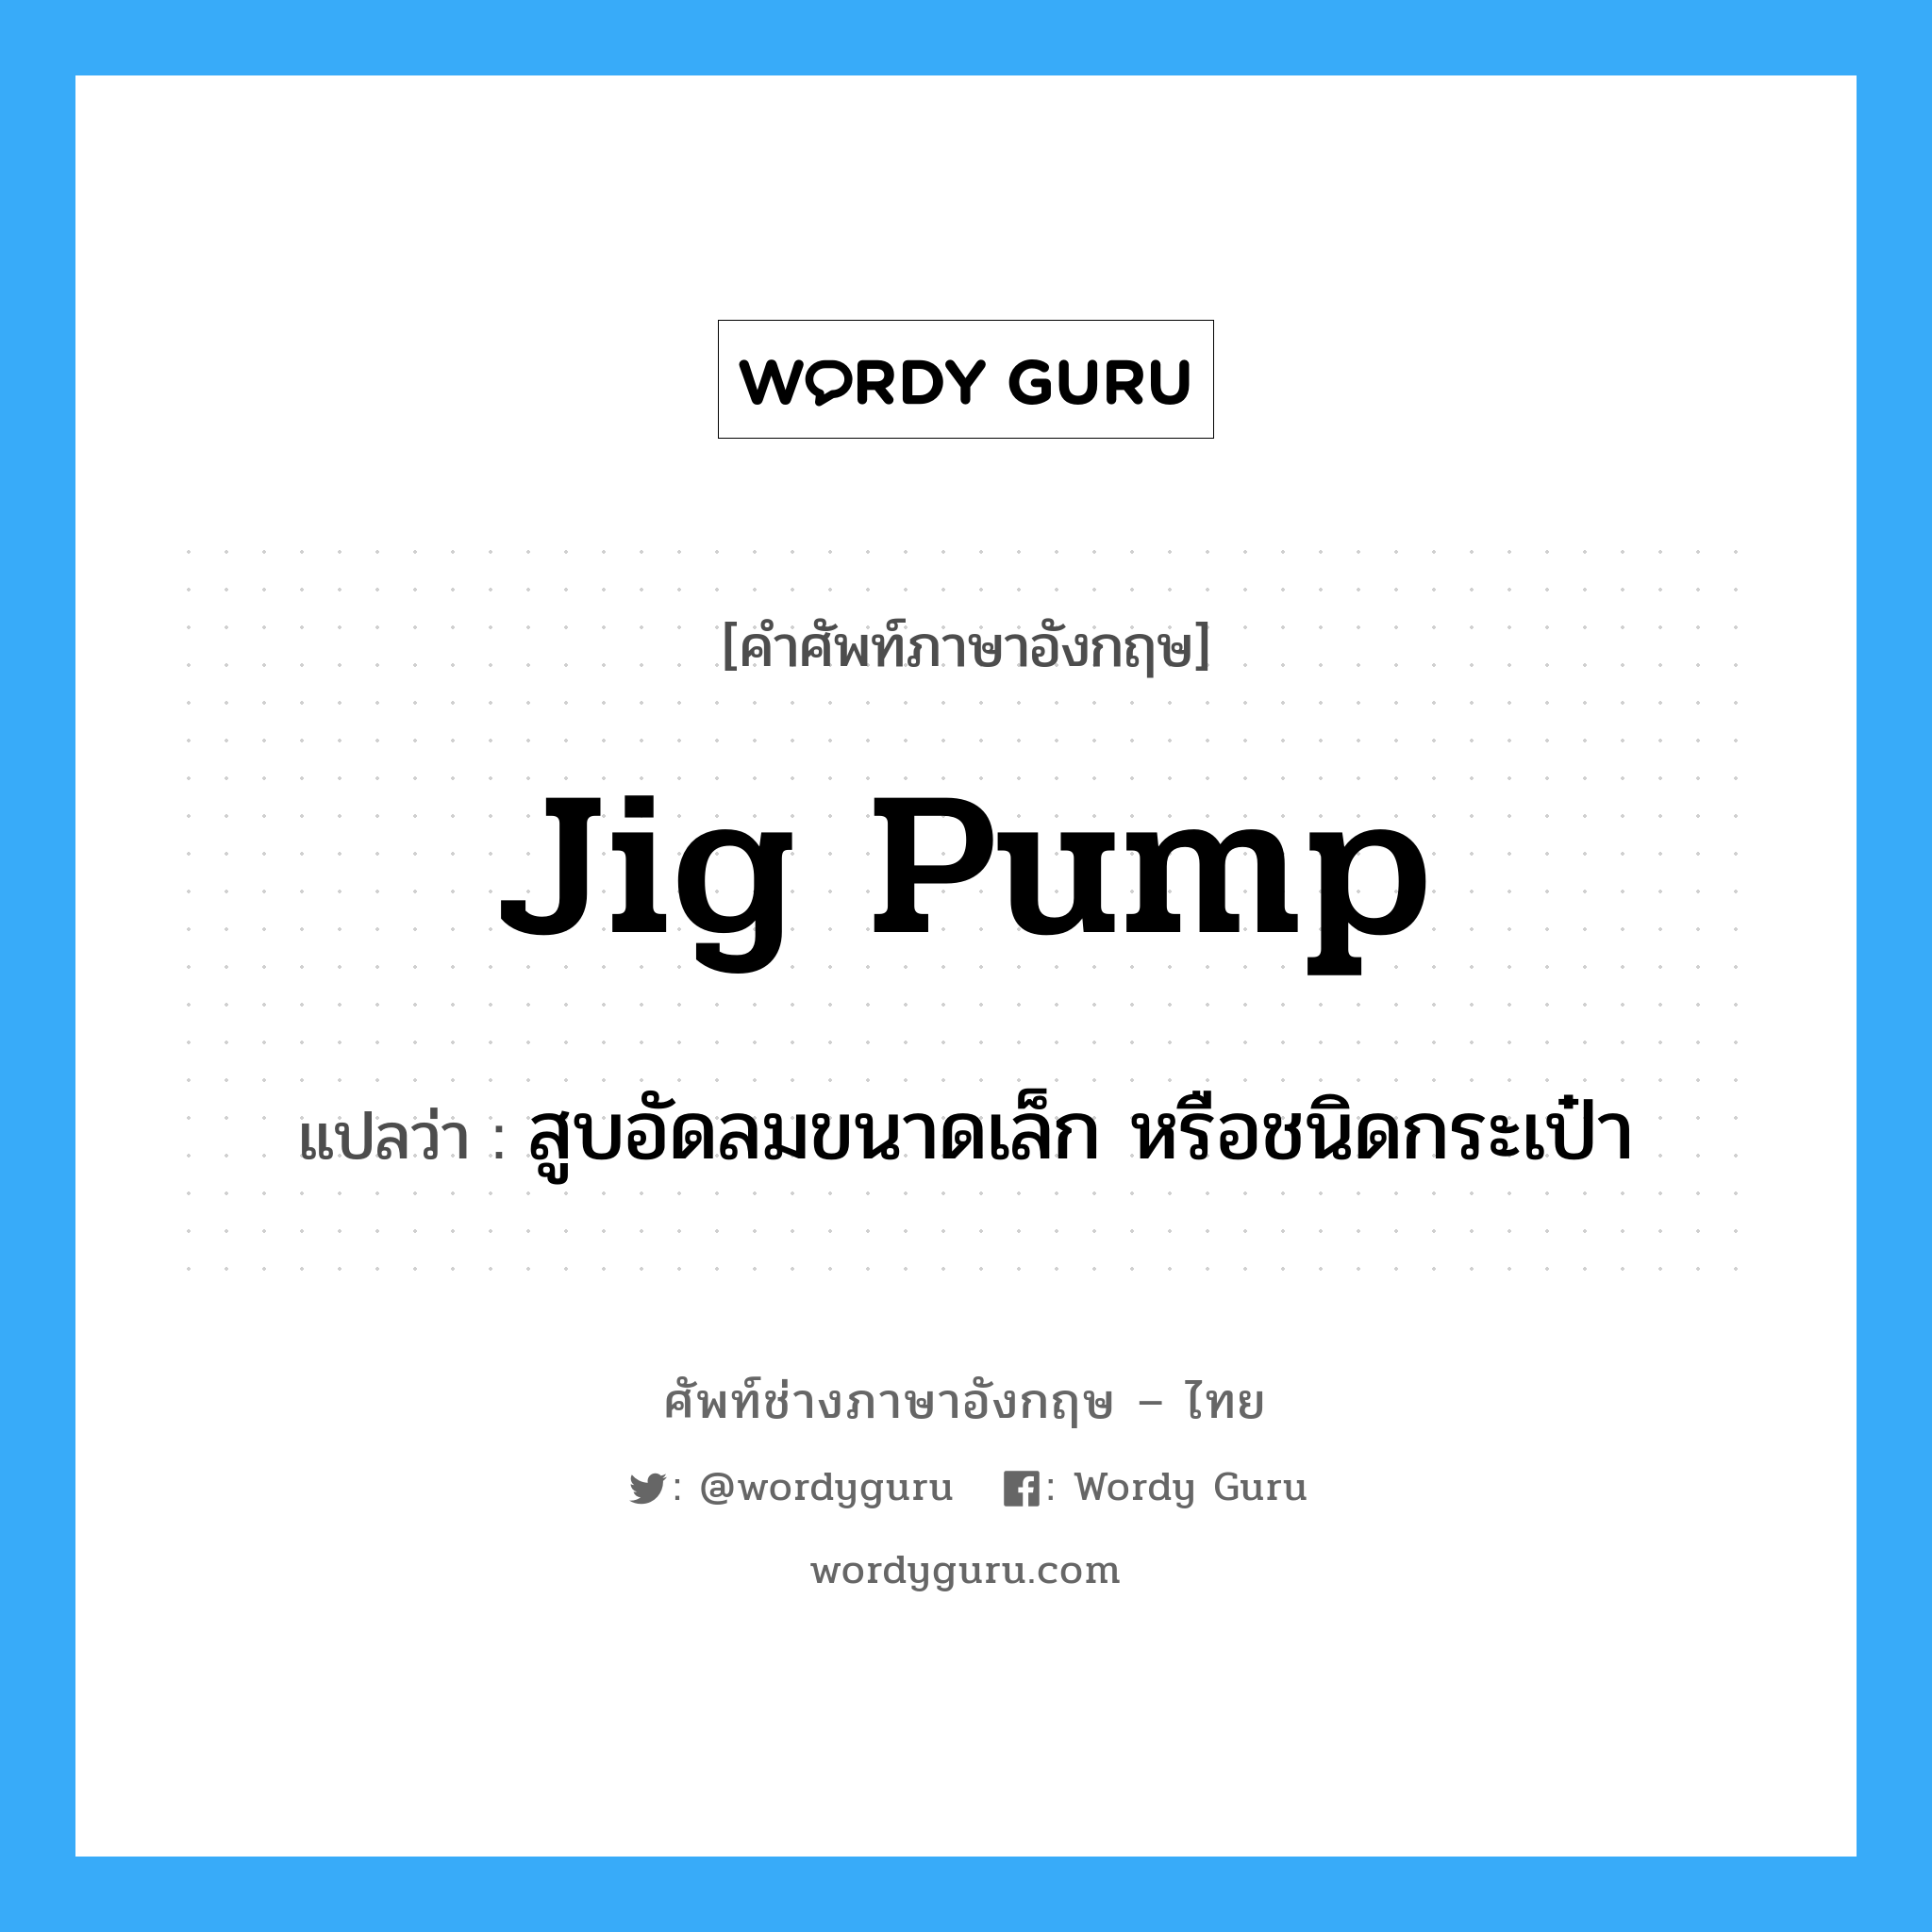 jig pump แปลว่า?, คำศัพท์ช่างภาษาอังกฤษ - ไทย jig pump คำศัพท์ภาษาอังกฤษ jig pump แปลว่า สูบอัดลมขนาดเล็ก หรือชนิดกระเป๋า